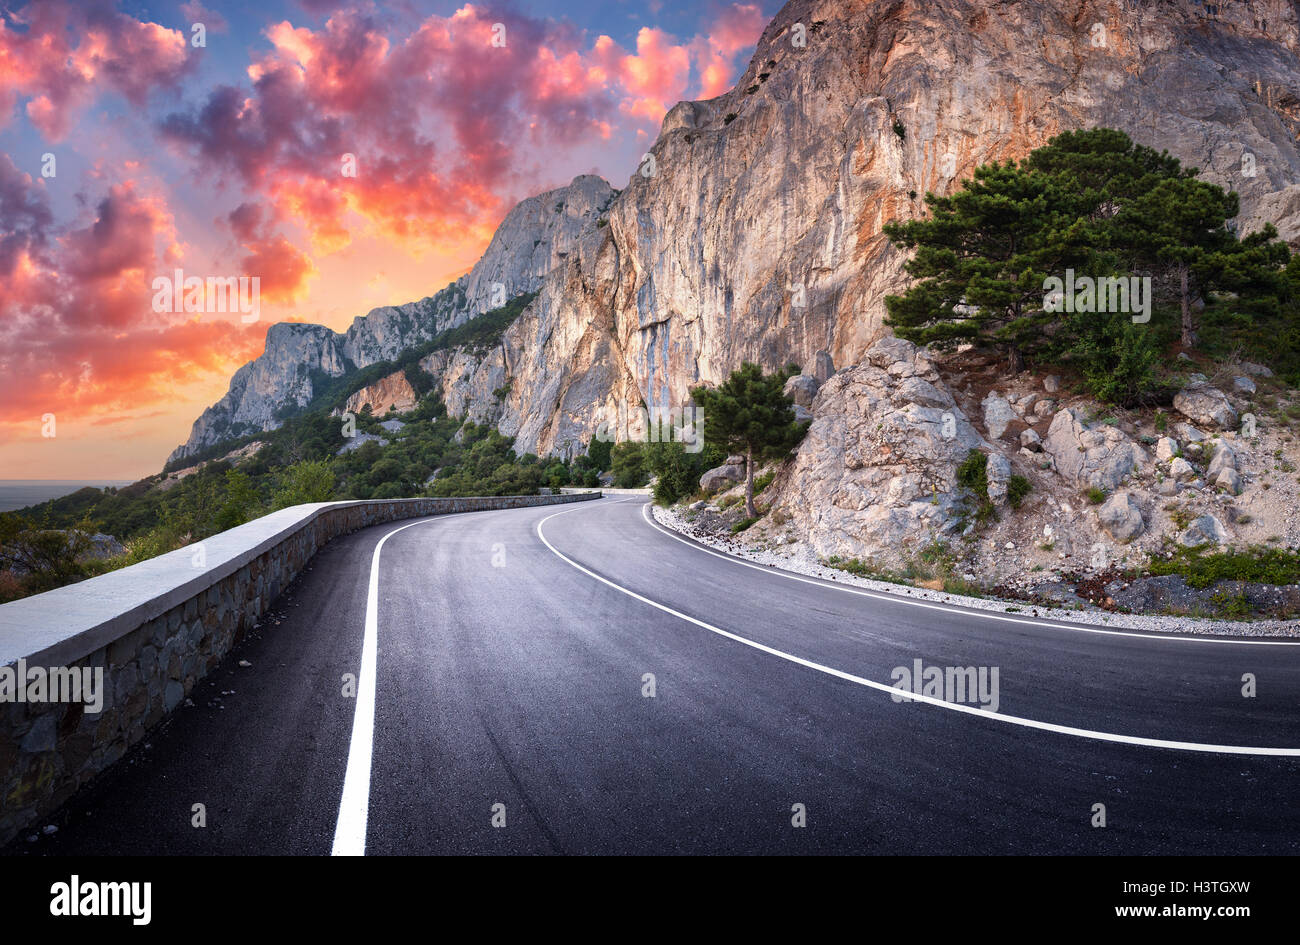 Asphaltierte Straße. Bunte Landschaft mit schönen kurvenreiche Bergstrasse mit perfekter Asphalt mit hohen Felsen, erstaunlich Himmel bei Sonne Stockfoto